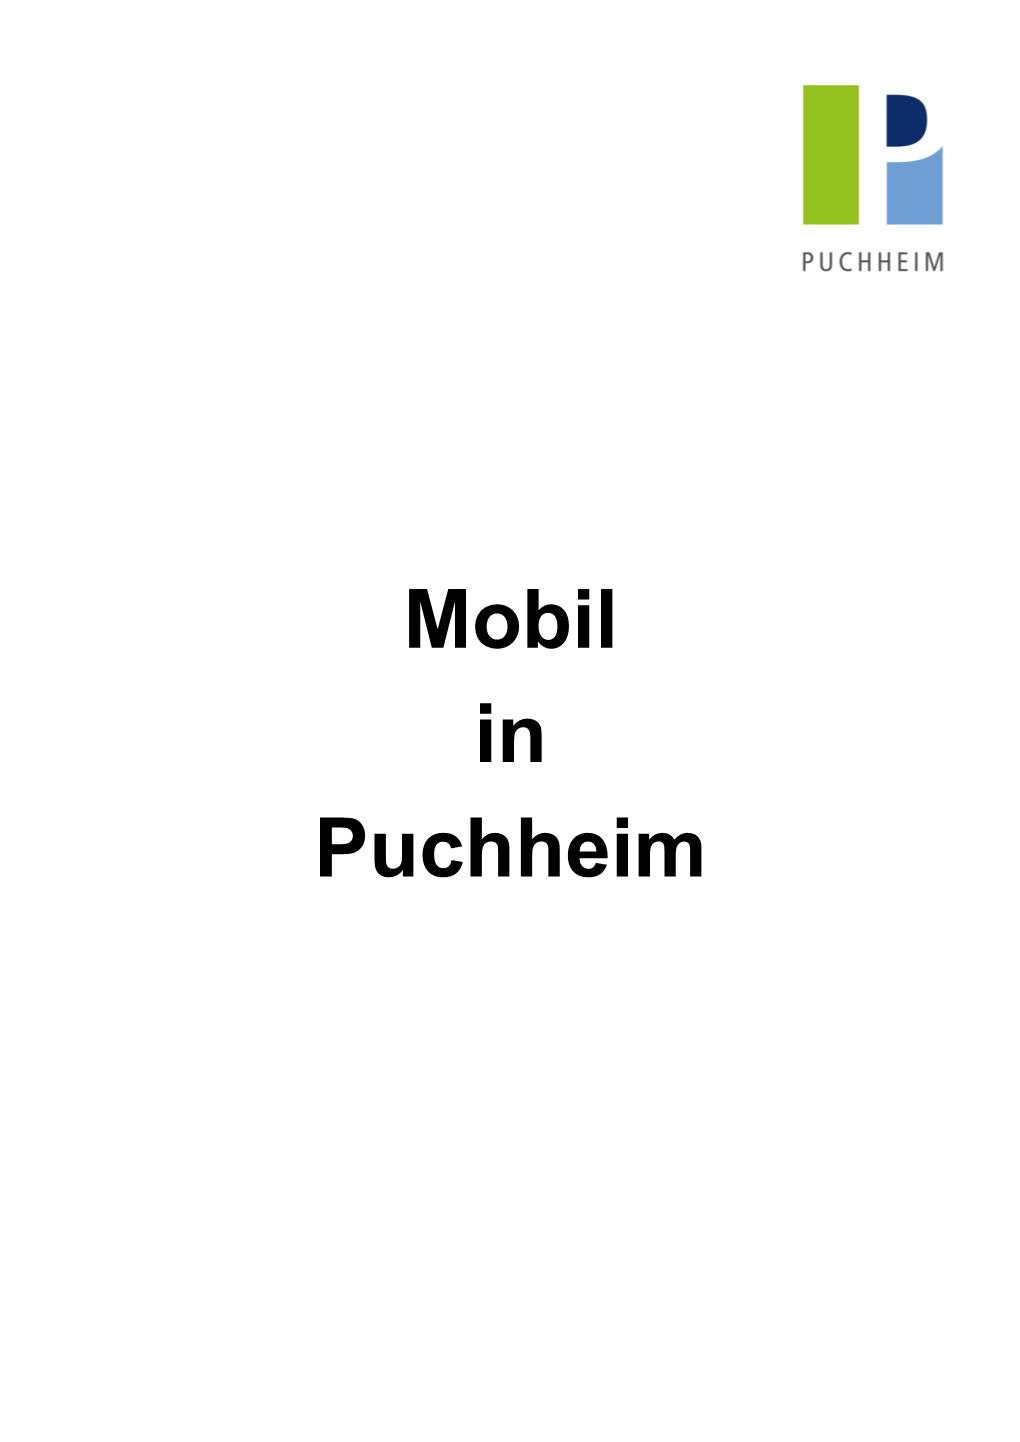 Mobil in Puchheim